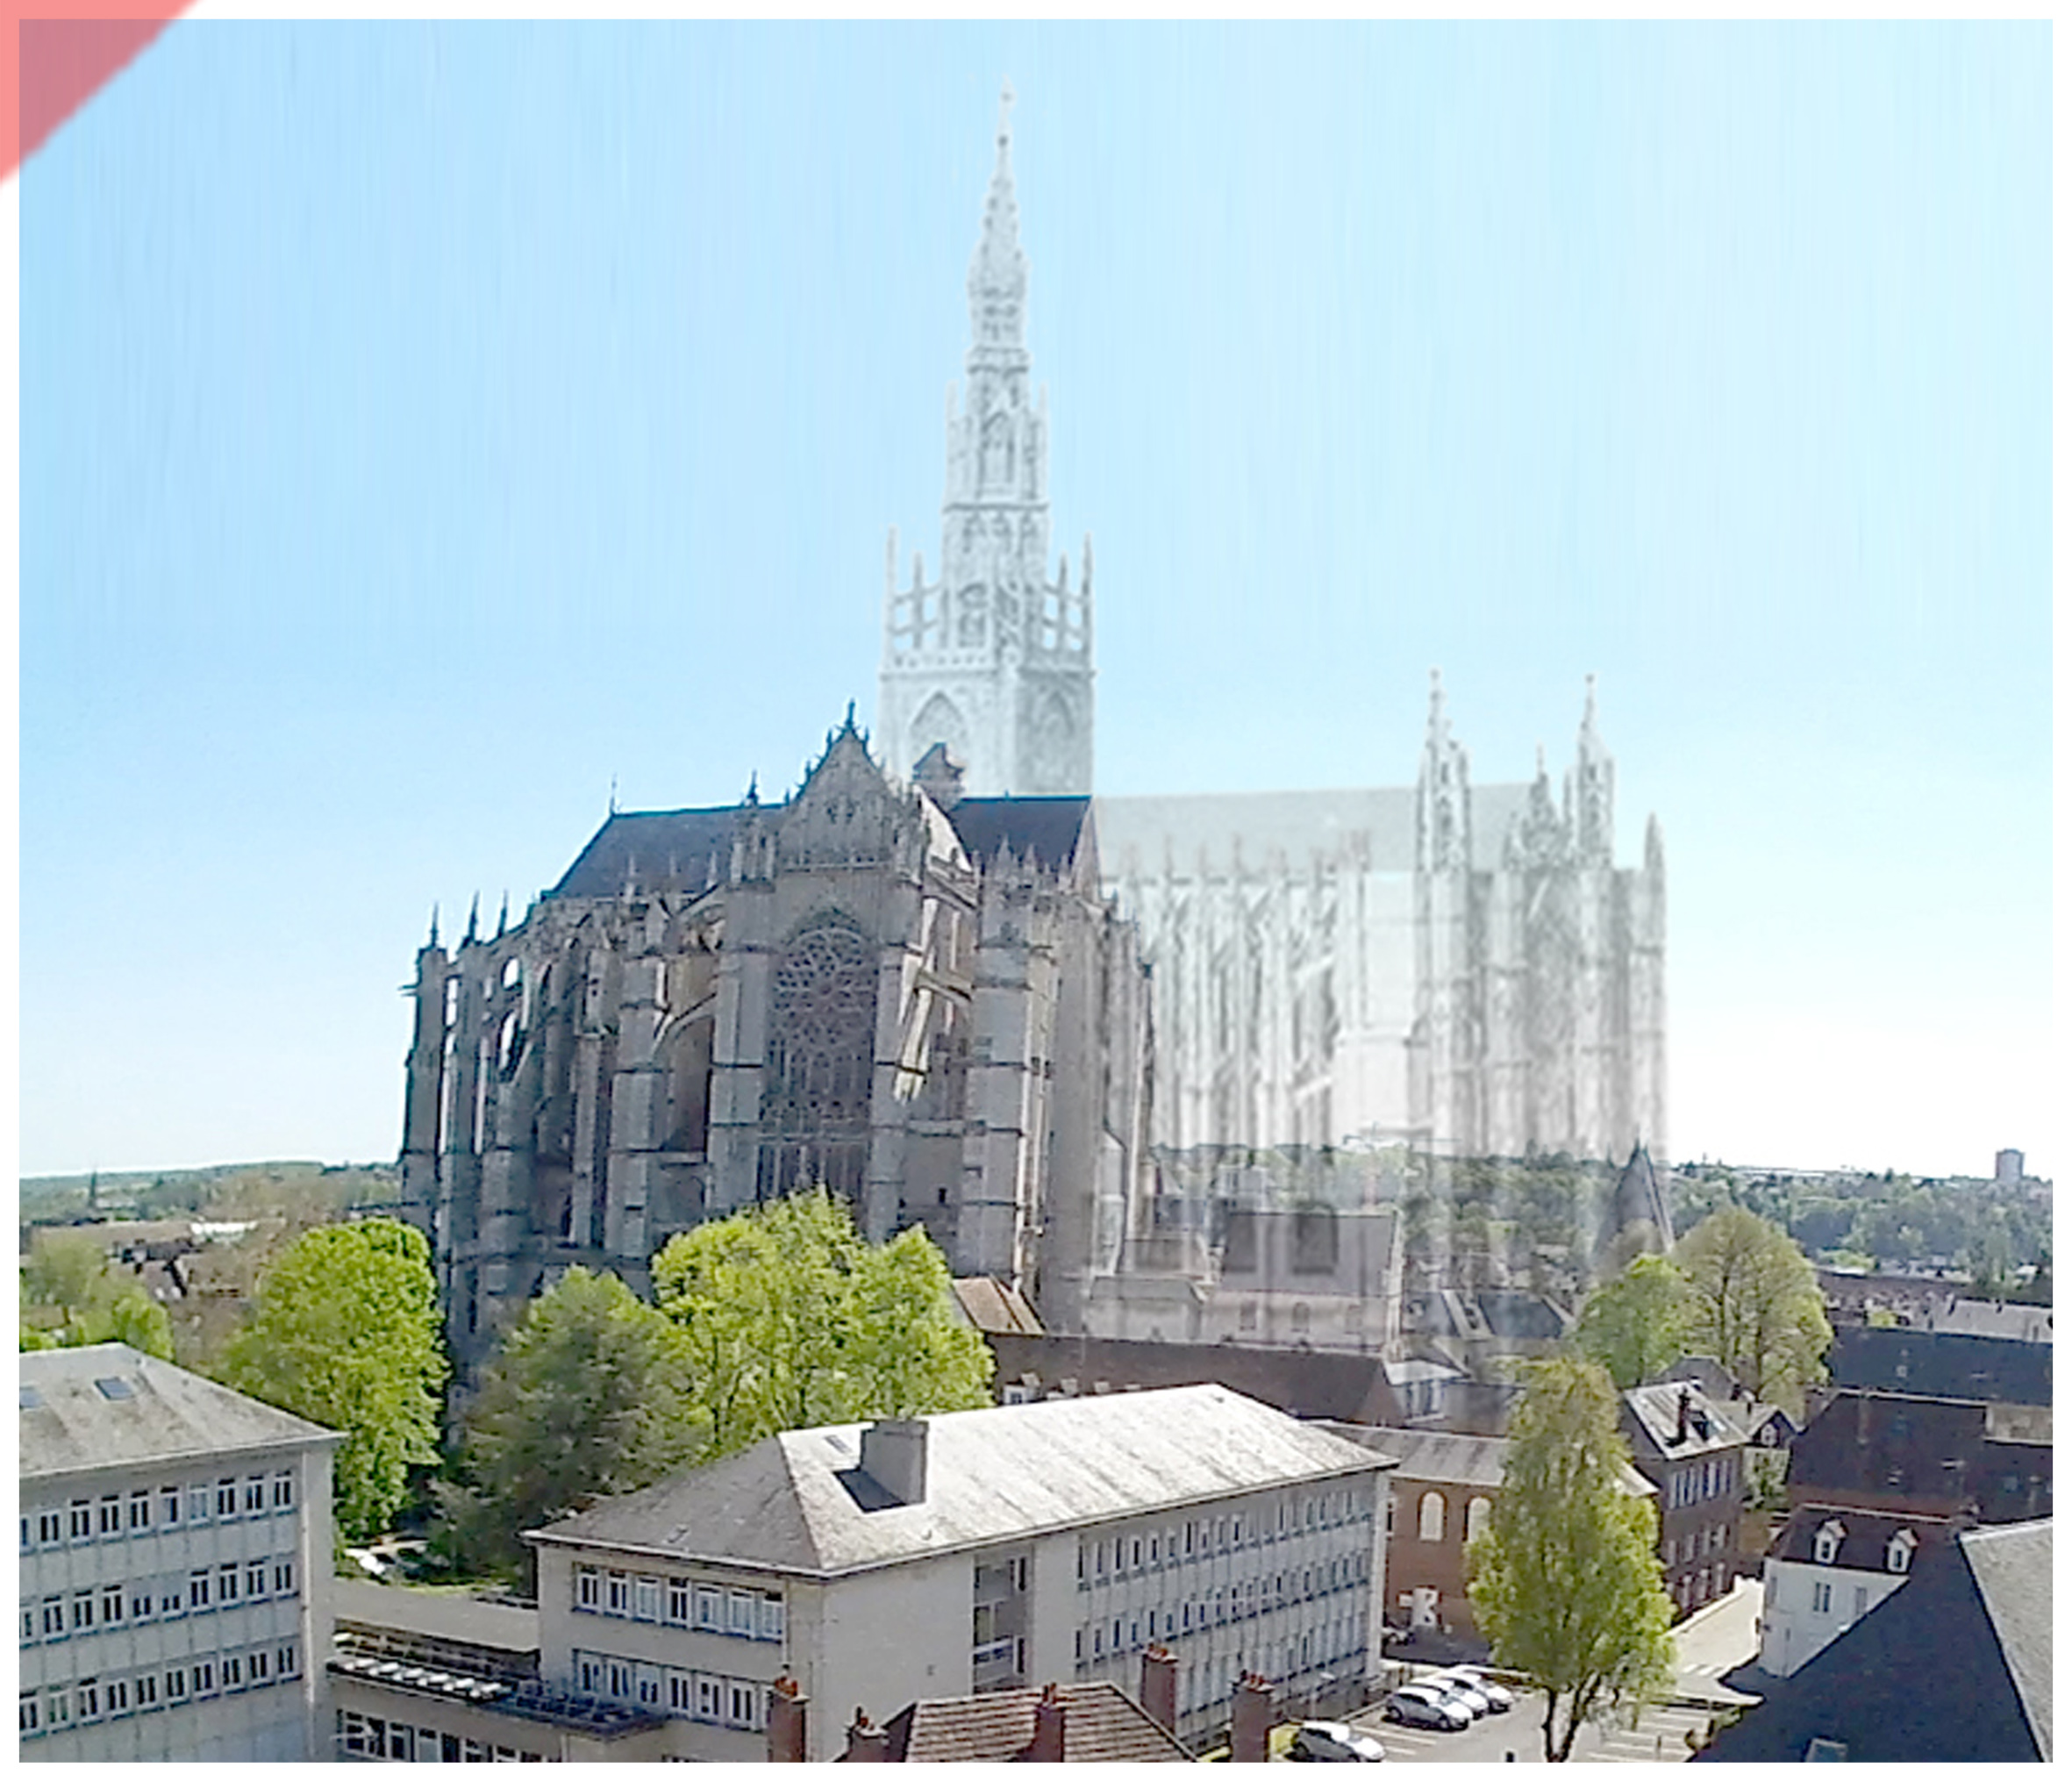 Cathédrale-Beauvais-vol-drone-façade-nord-façade-prévue-tour-1573-église-planifiée-Cathedrale-Beauvais-drone-nord-façade-geplante-façade-tower-1573-planned-church-kathedrale